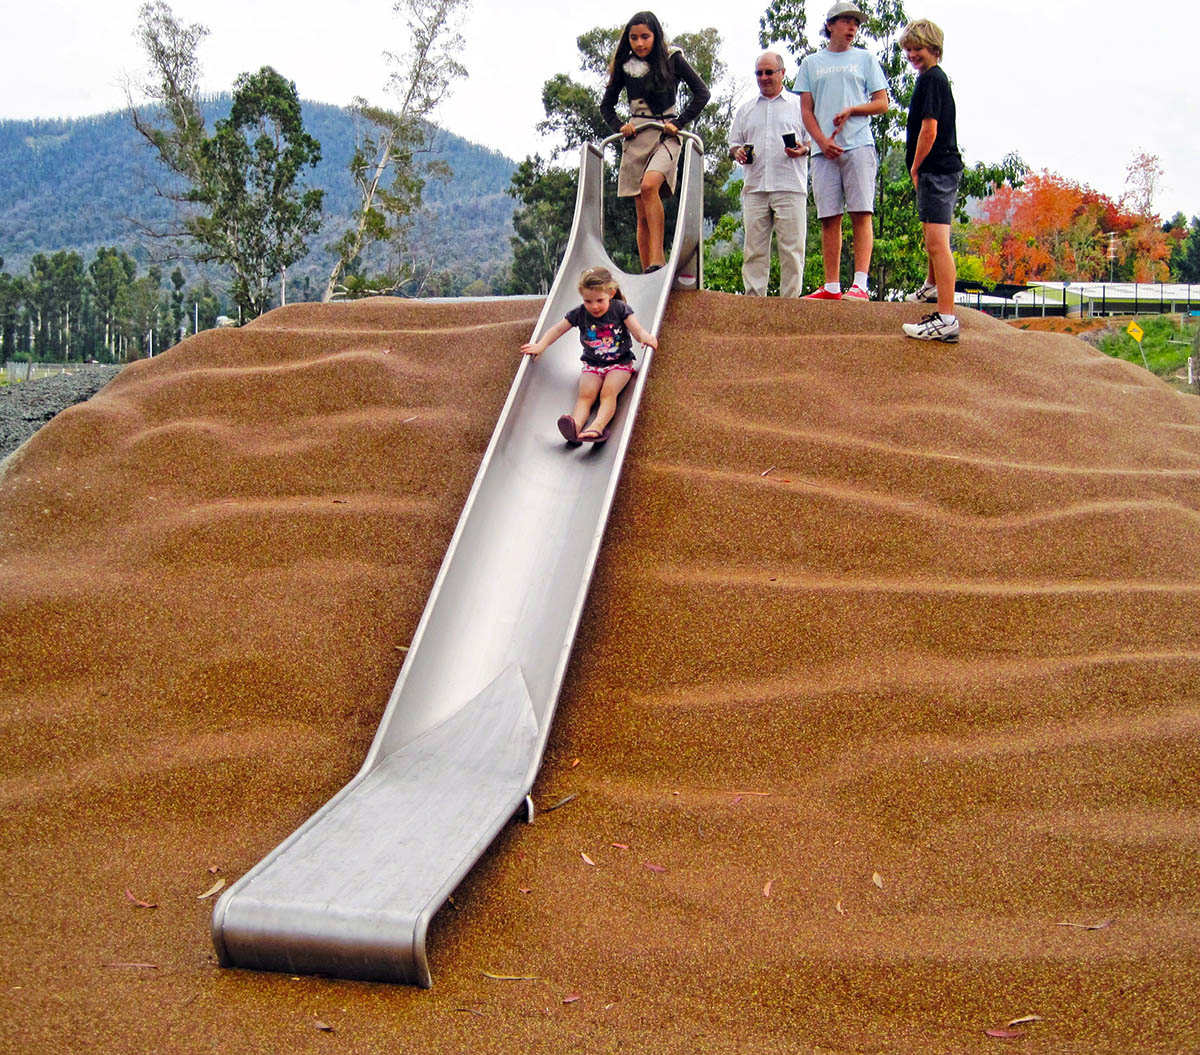 embankment slide on rubber surface